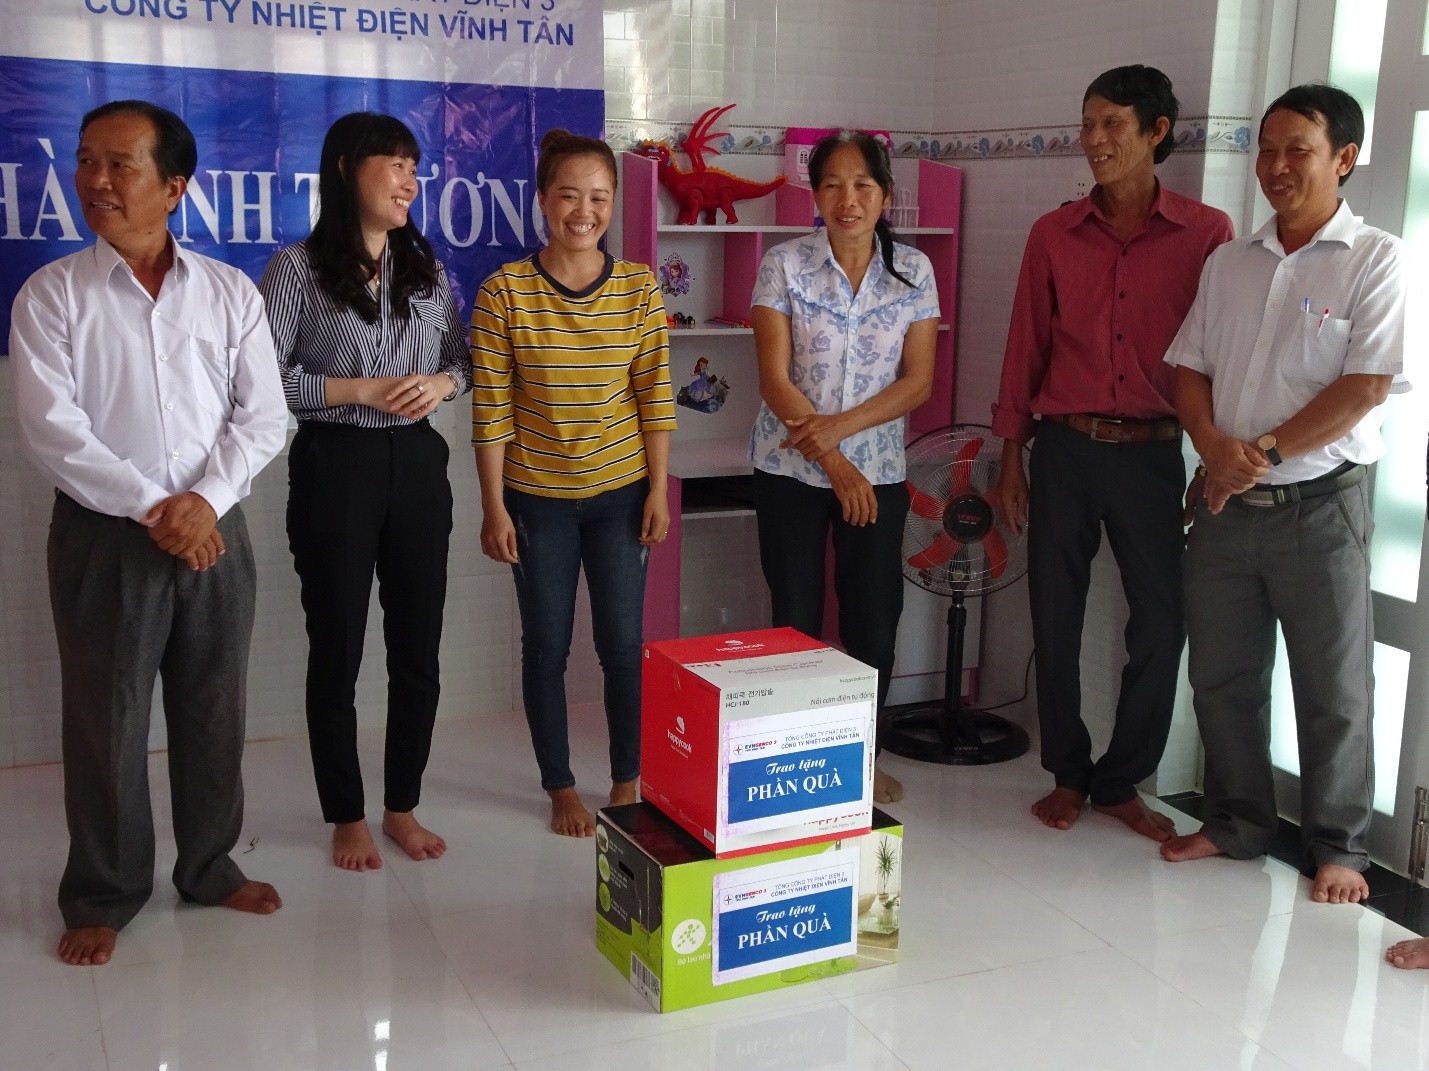 Công ty Nhiệt điện Vĩnh Tân trao tặng nhà tình thương  cho hộ nghèo Xã Vĩnh Hảo, huyện Tuy Phong